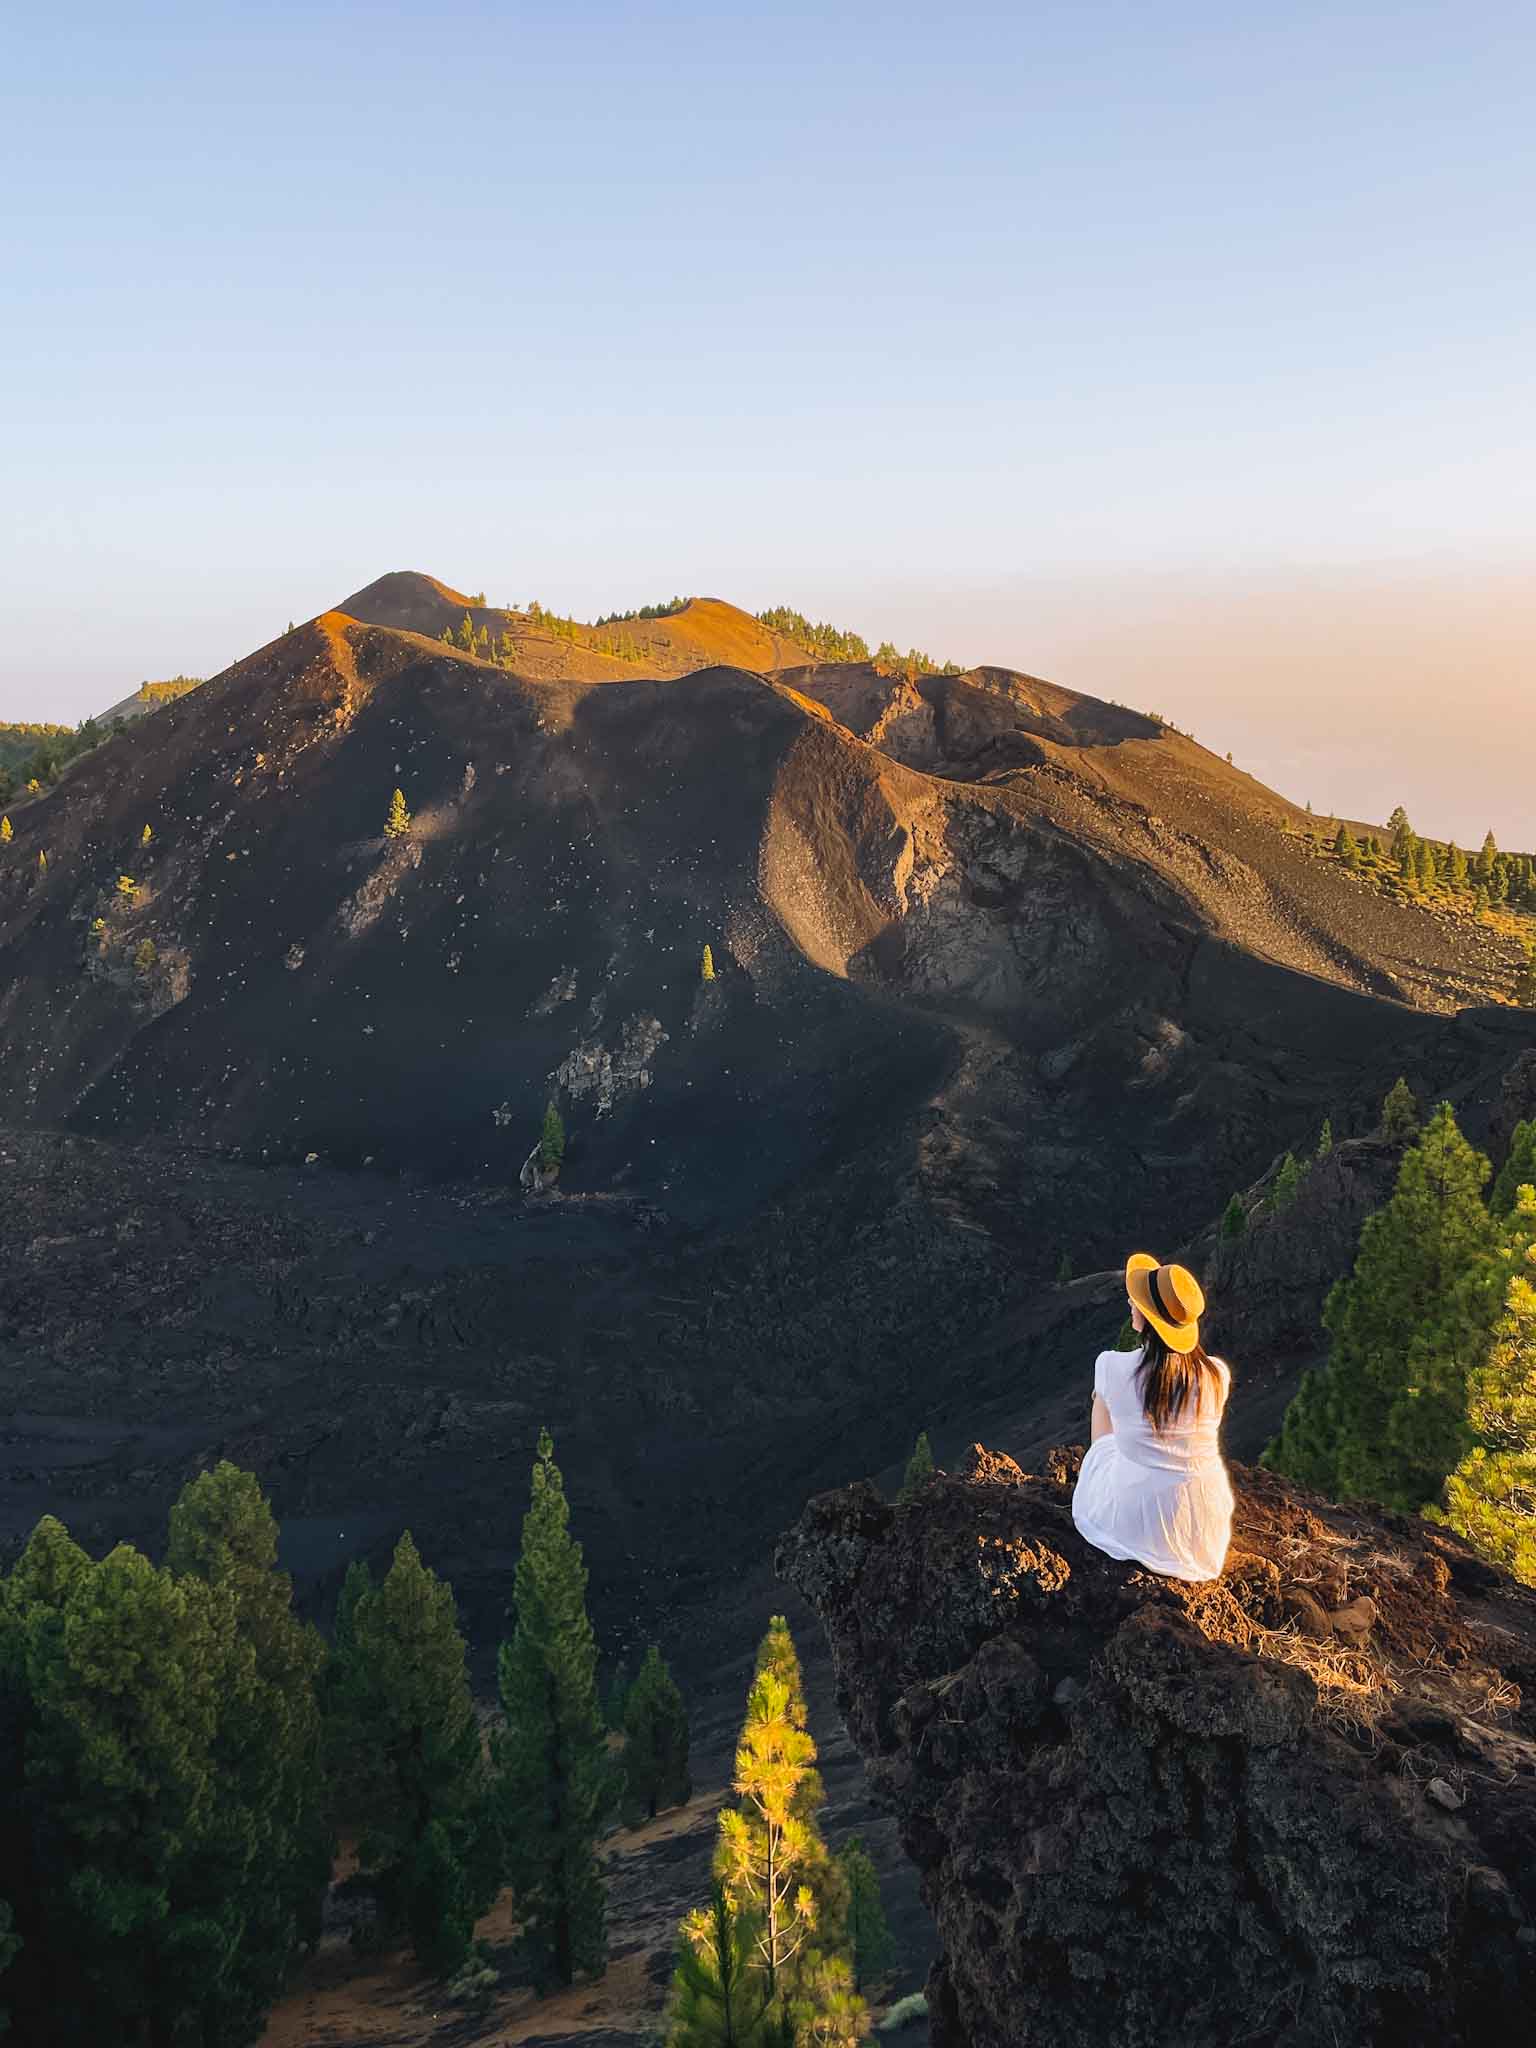 Best Instagram spots in La Palma Canary Islands - El Duraznero in Ruta de los Volcanes